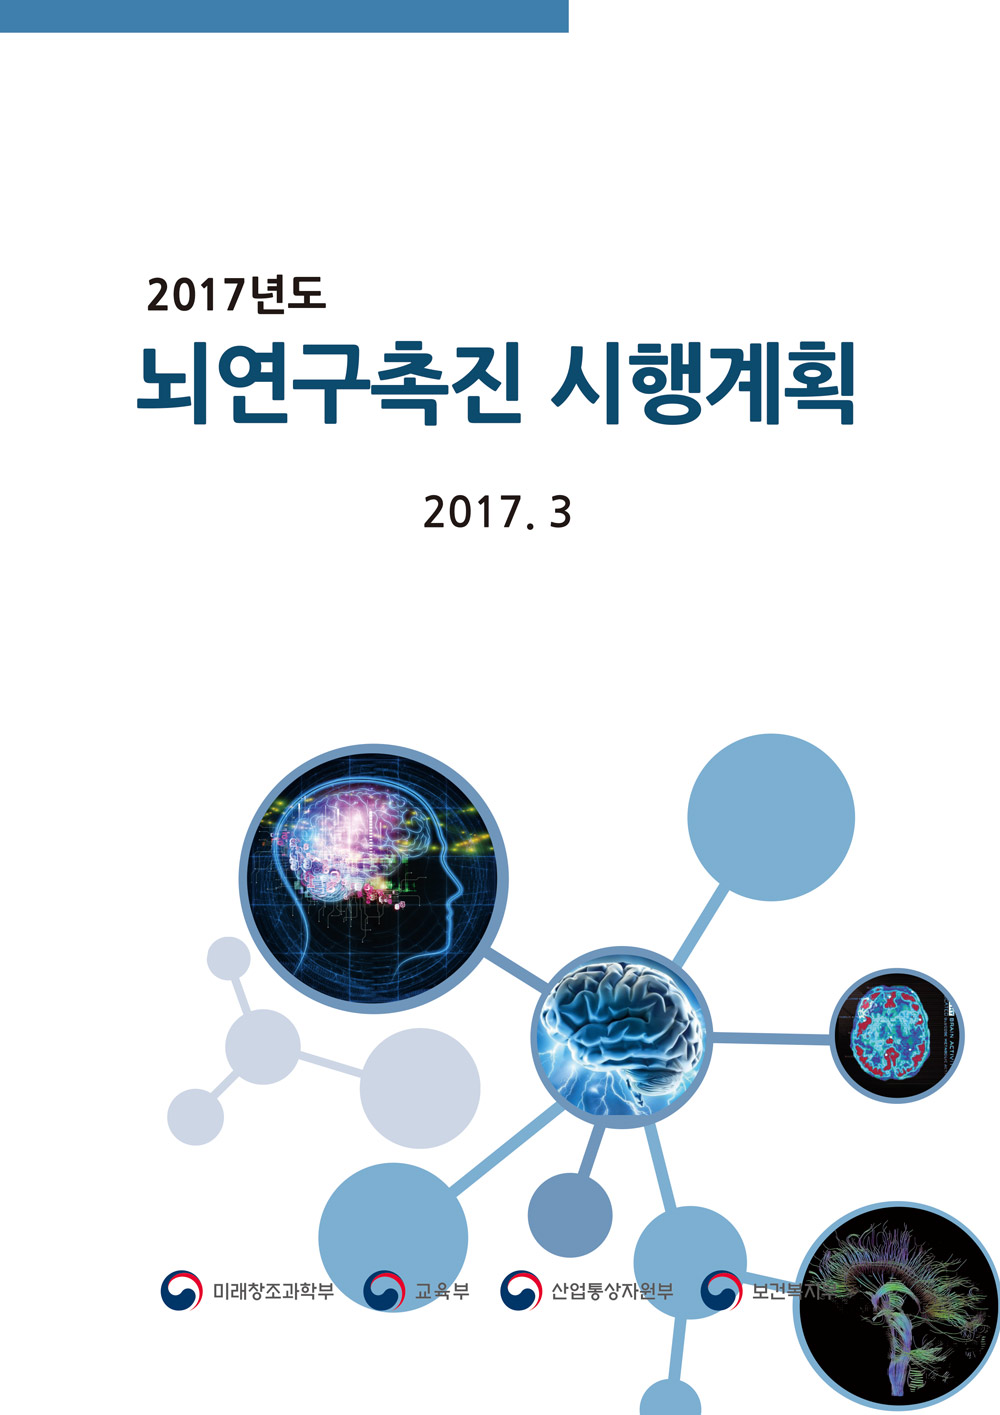 2017년도뇌연구촉진시행계획